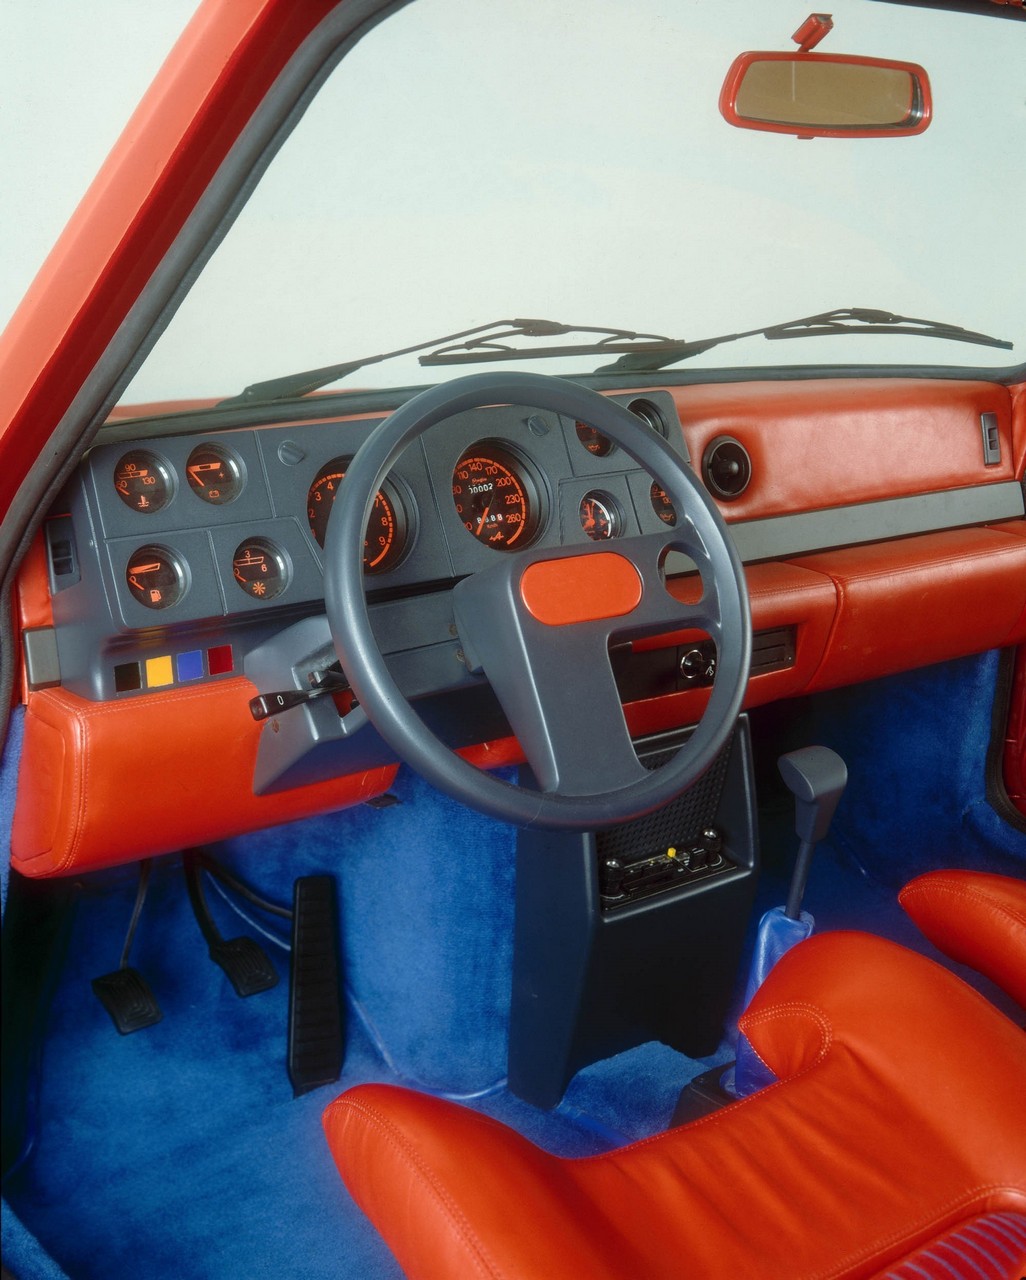 Renault 5 Turbo cockpit